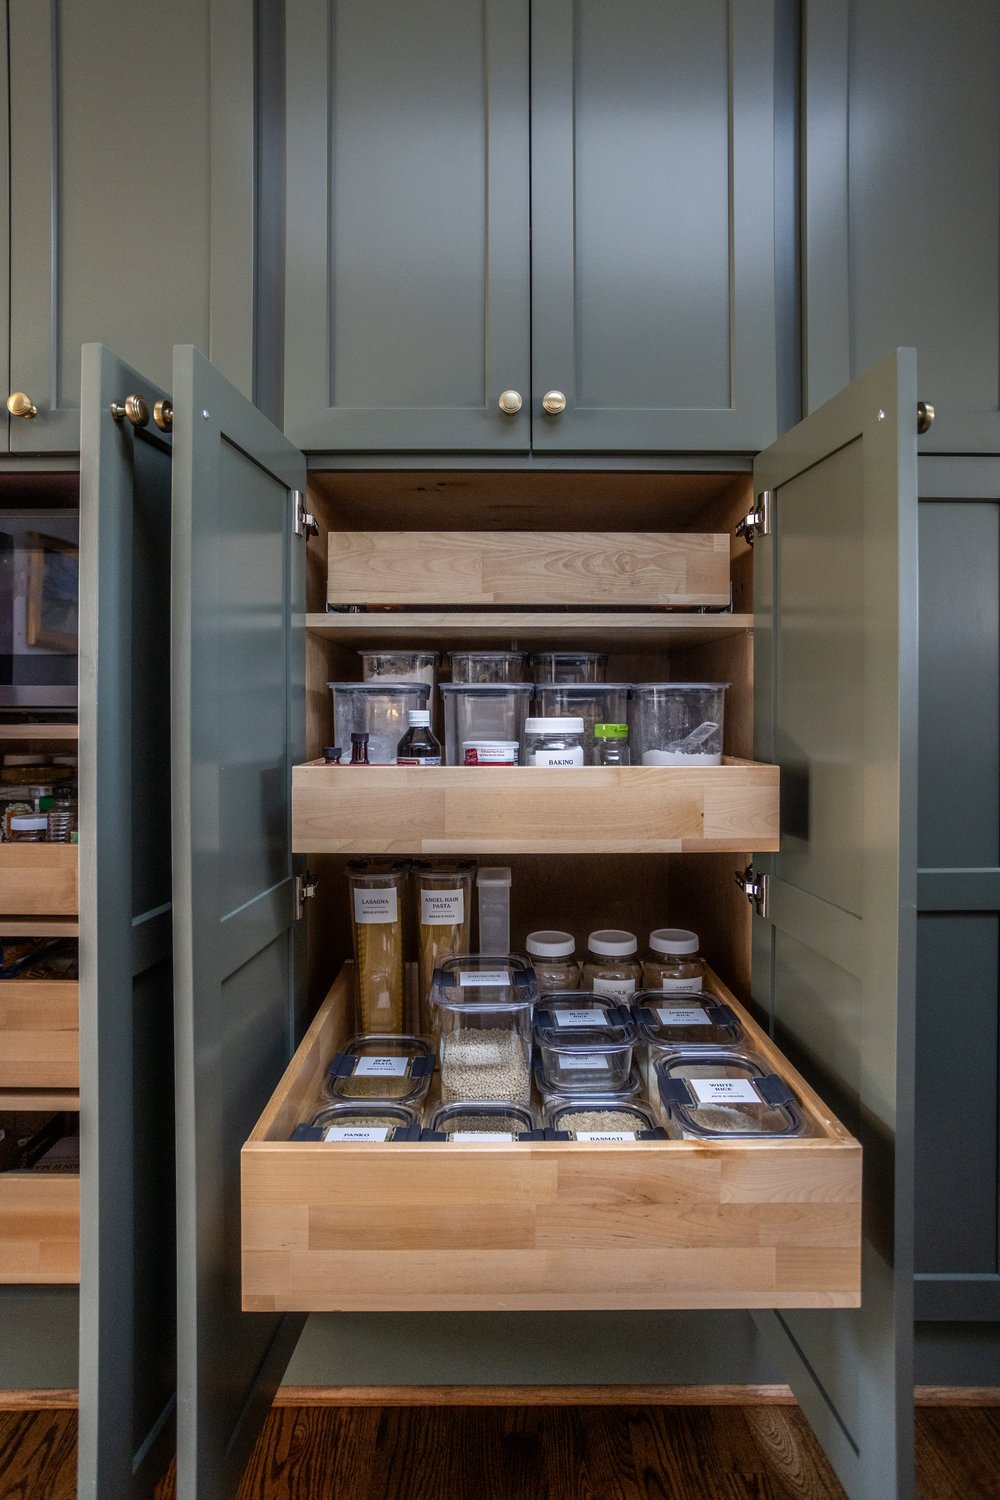 Chef's Kitchen Design: Pantry Storage